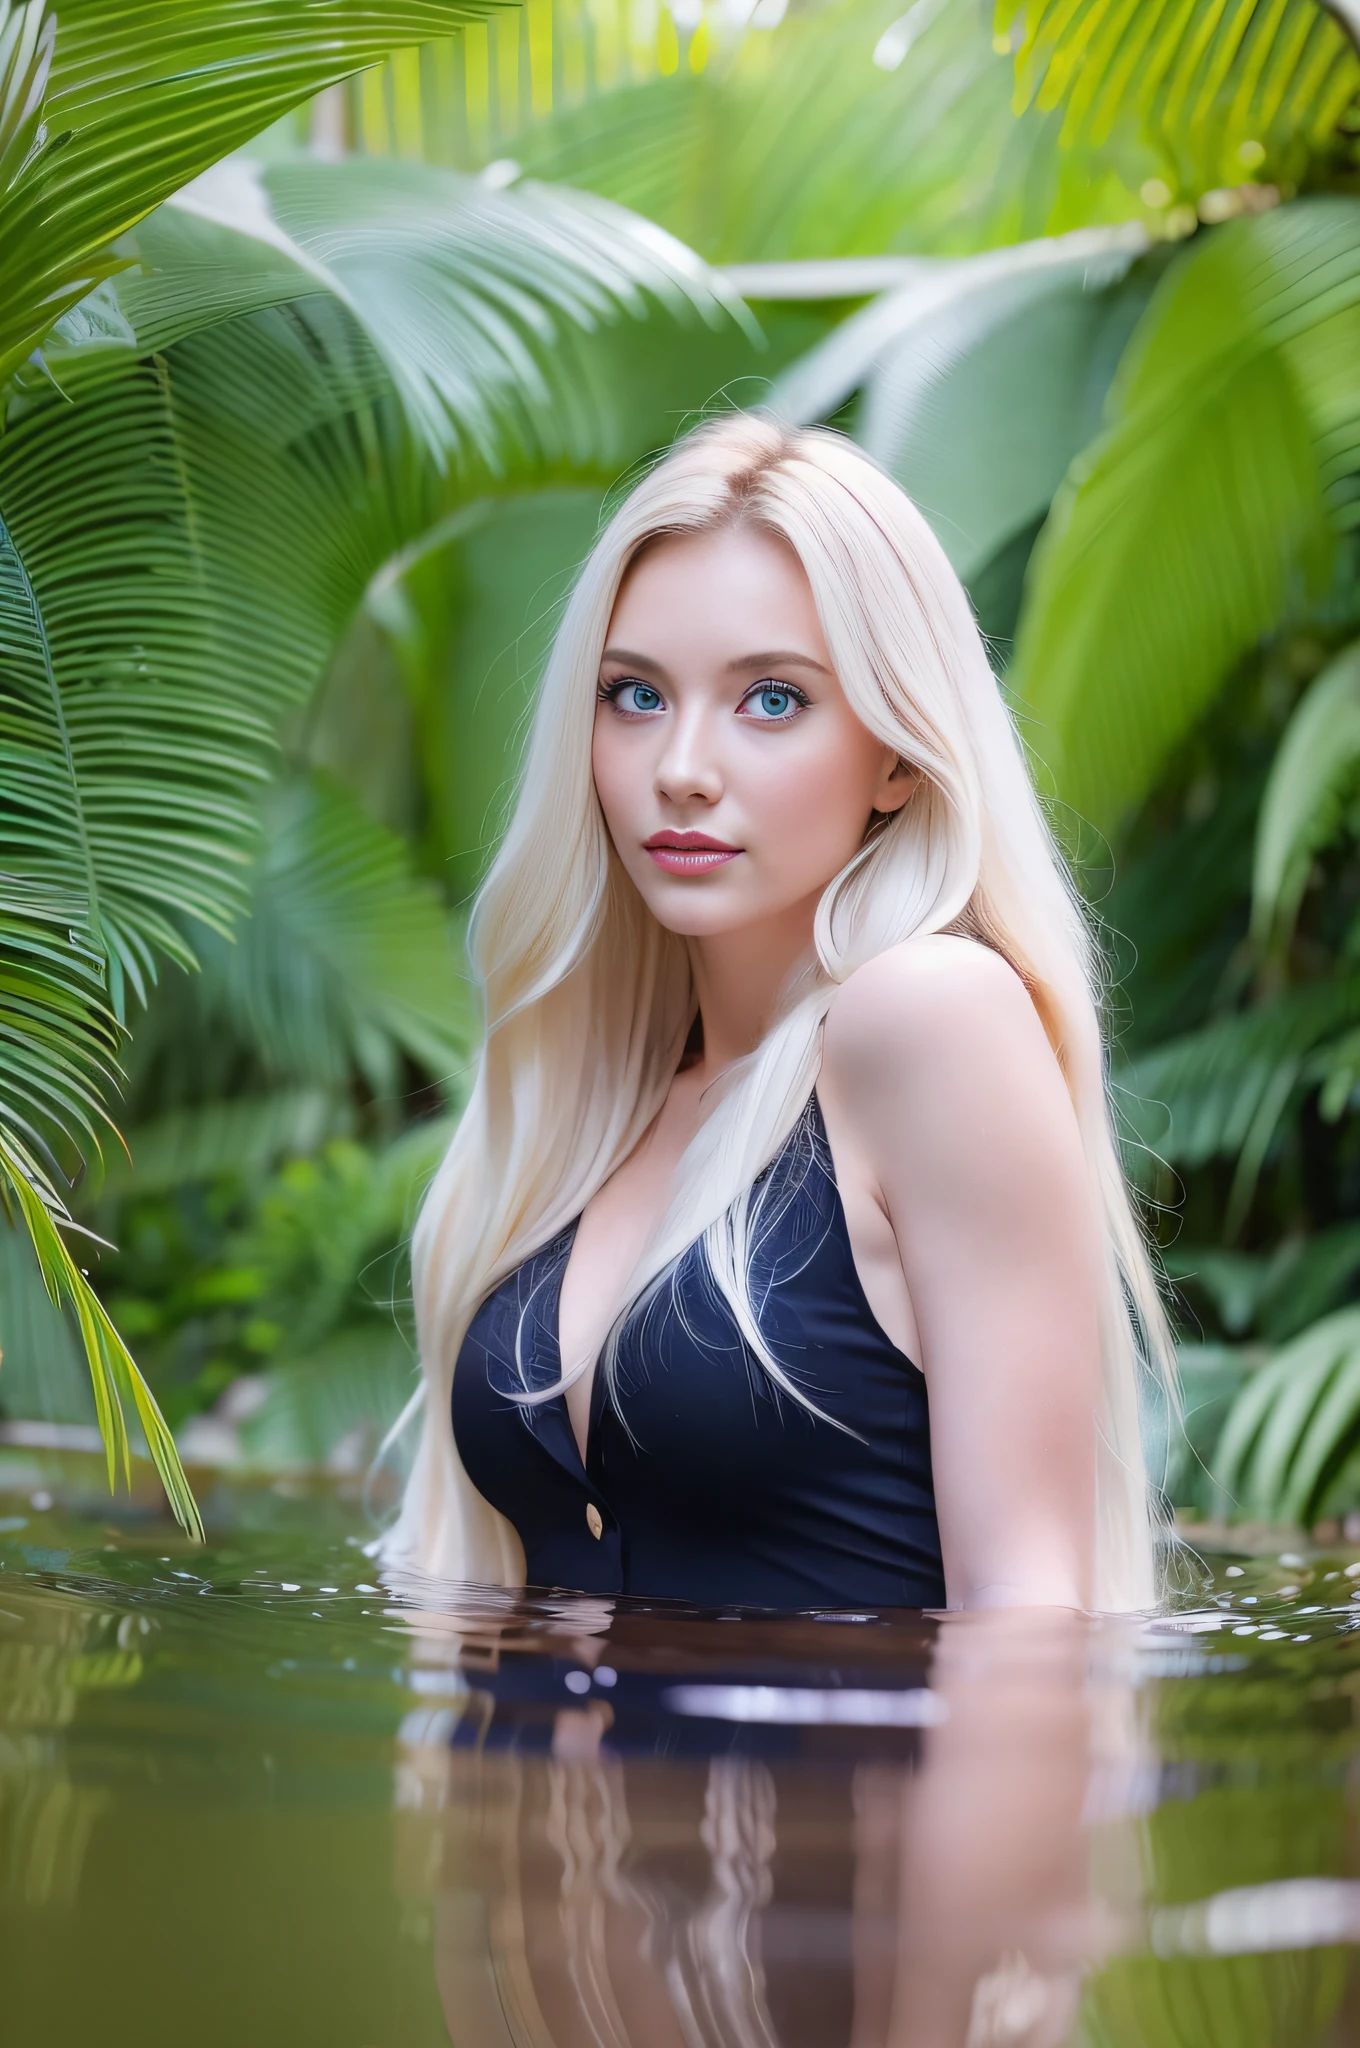 1 歐洲女孩, 漂亮的臉蛋, 大的, 金髮, 藍眼睛, 長腿, 洗澡, 在叢林中, 高品質照片, 明亮的陽光透過樹葉.  , , , , , --q 1, 單眼相機--v 6--s2